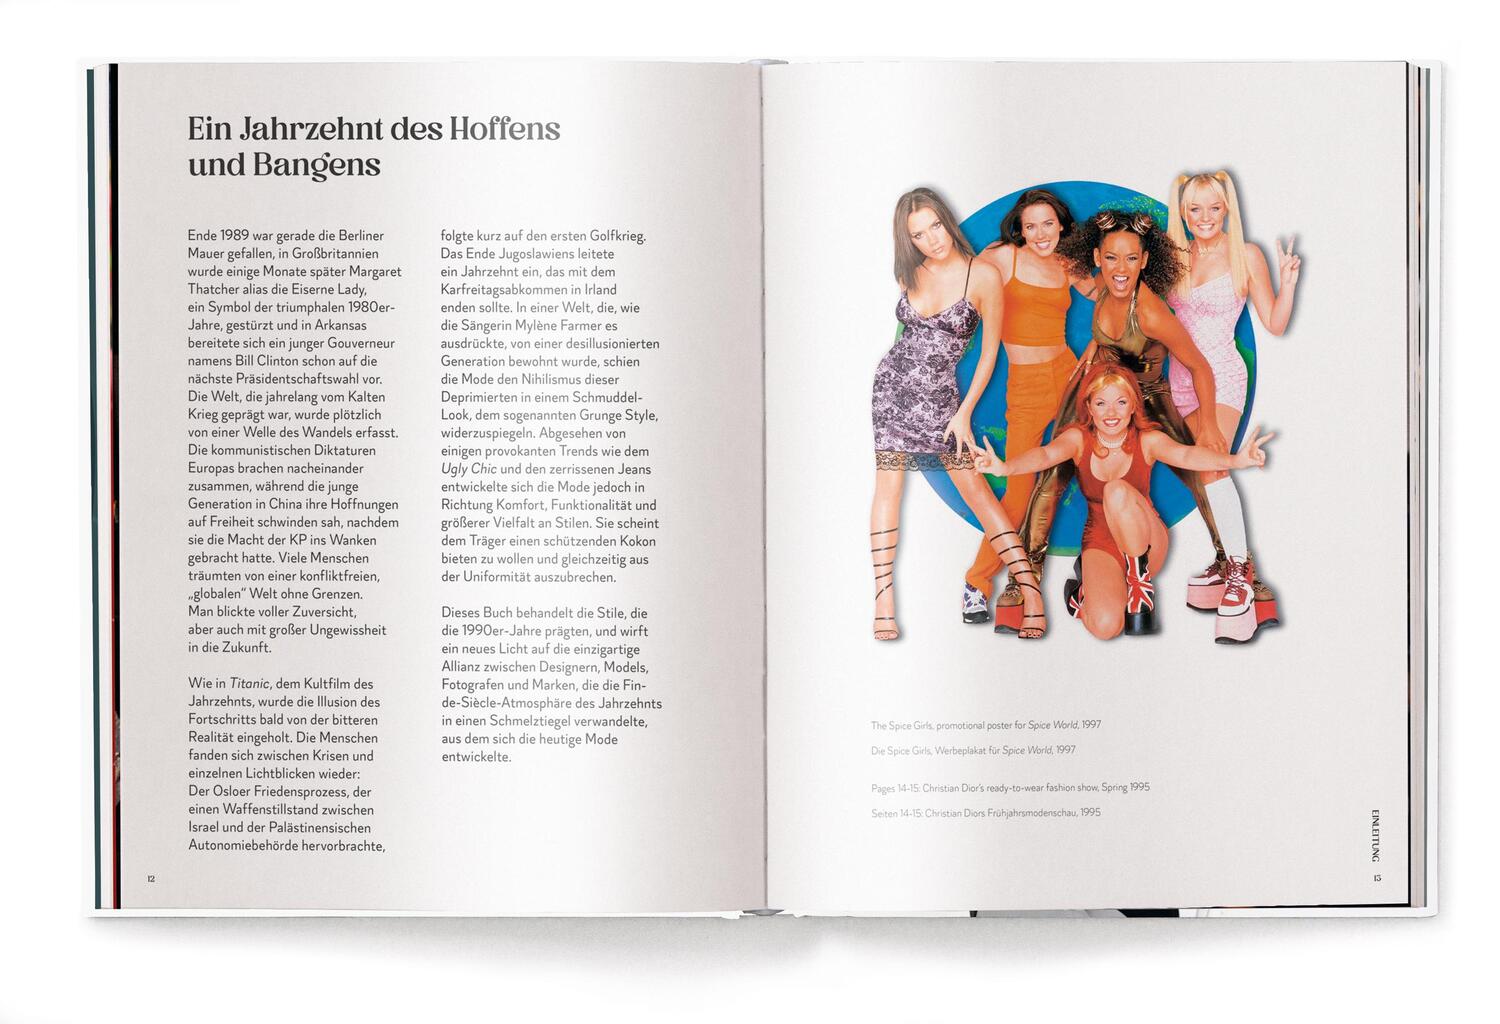 Bild: 9783961715206 | The 1990s Fashion Book | Pierre Toromanoff | Buch | 224 S. | Deutsch